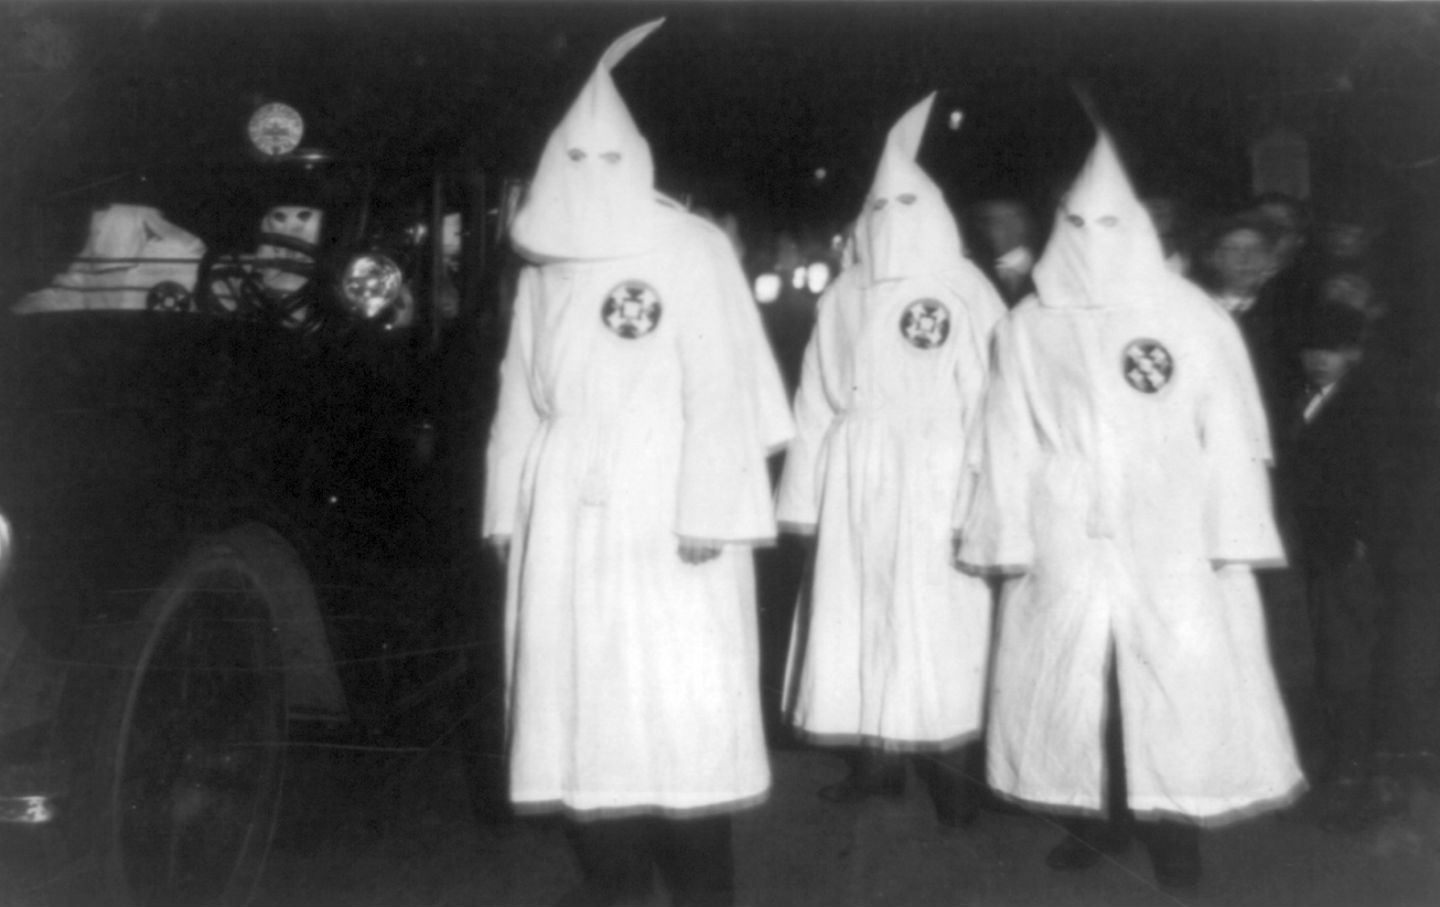 December 24, 1865: The Ku Klux Klan Is Formed